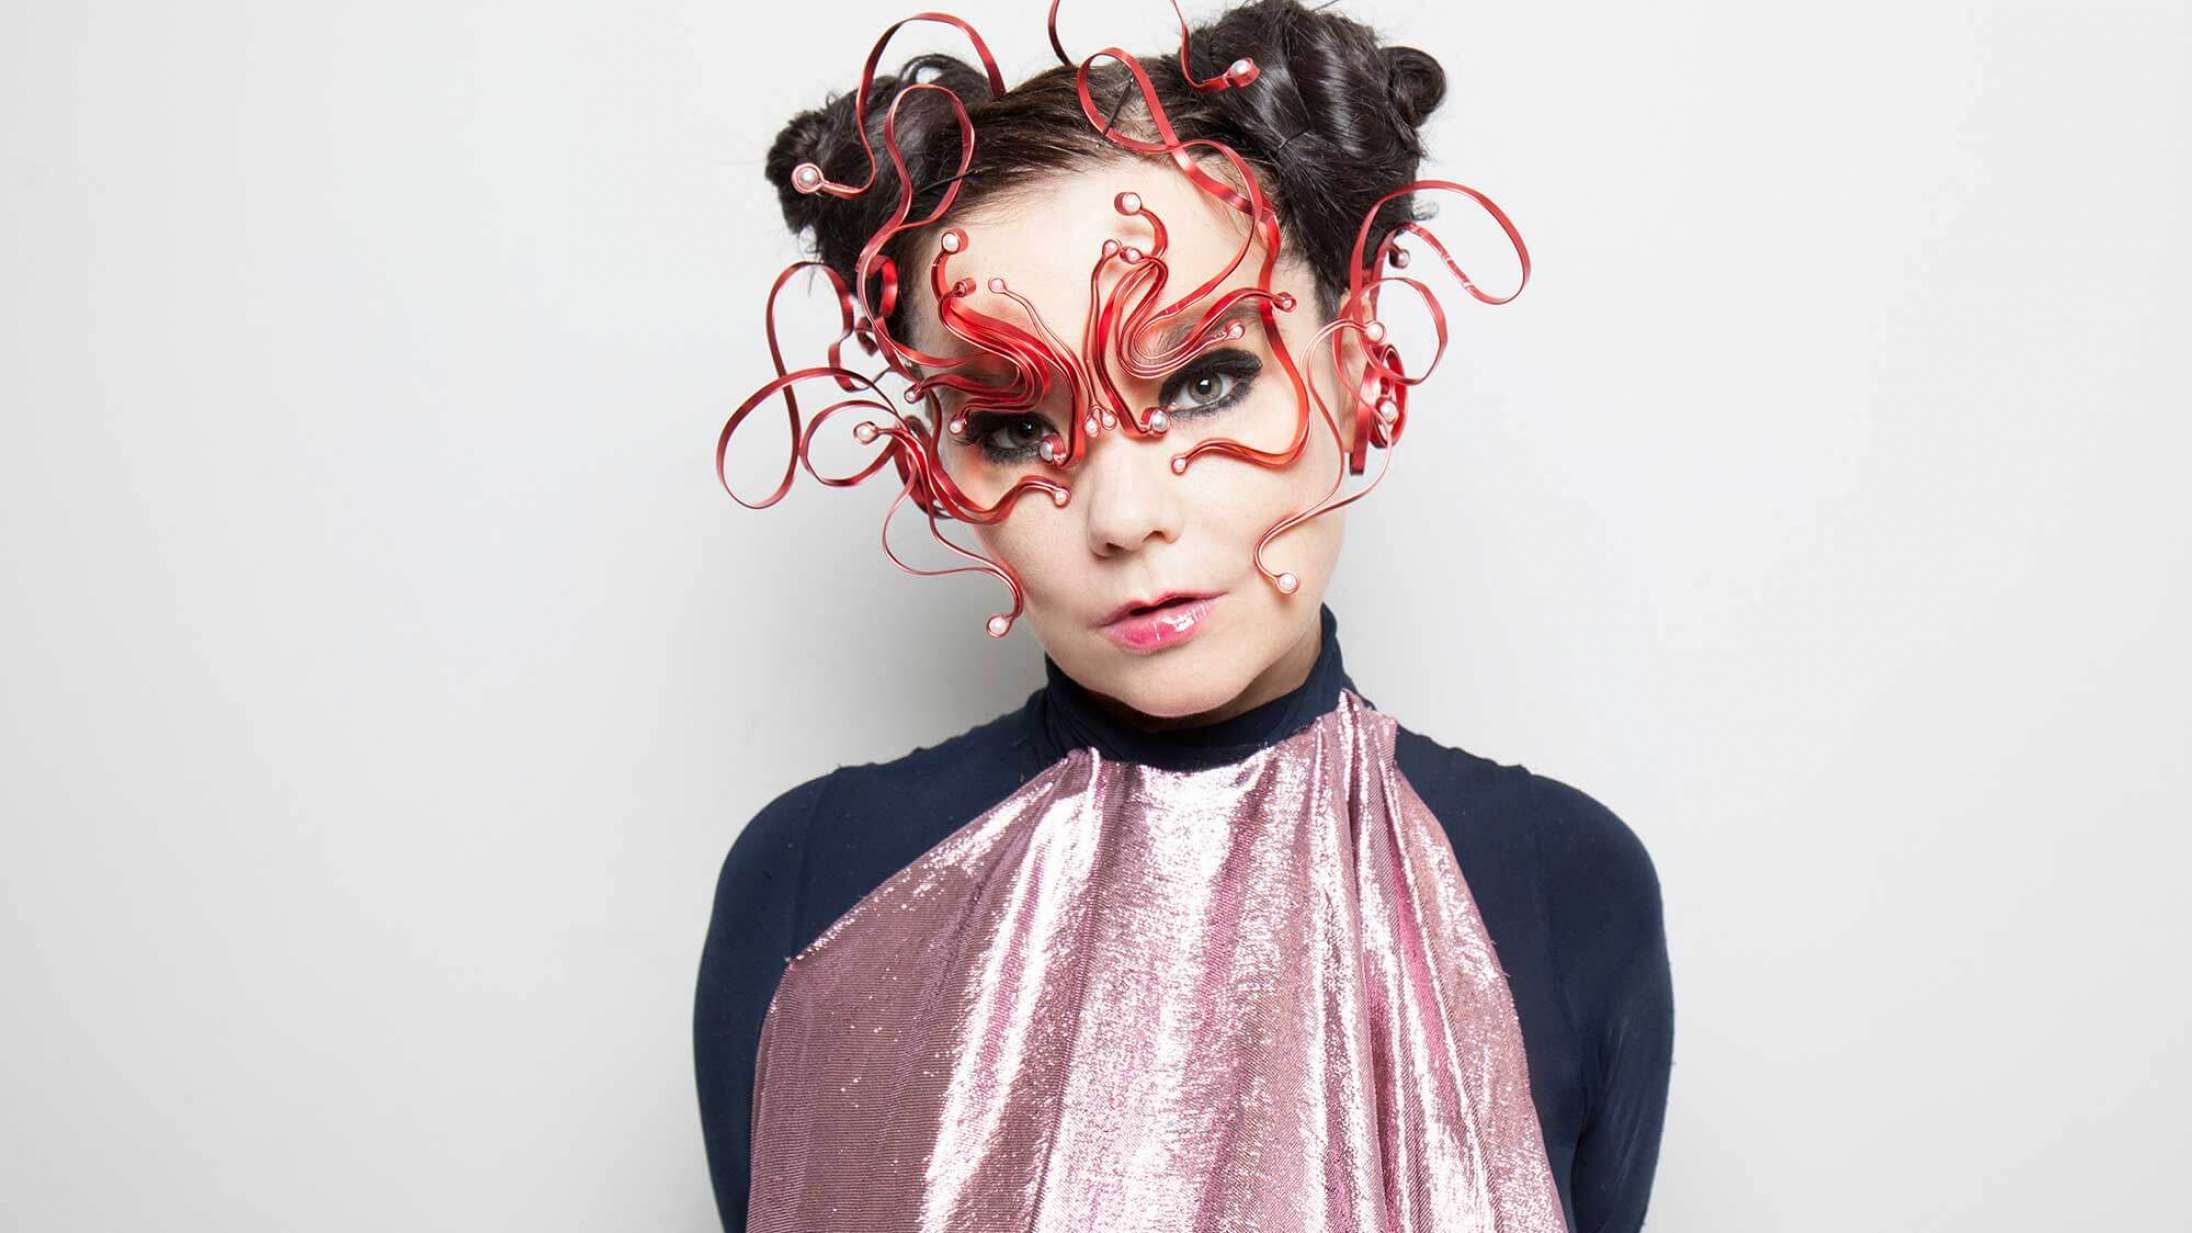 Björk kommer til Danmark med spektakulært koncertsetup